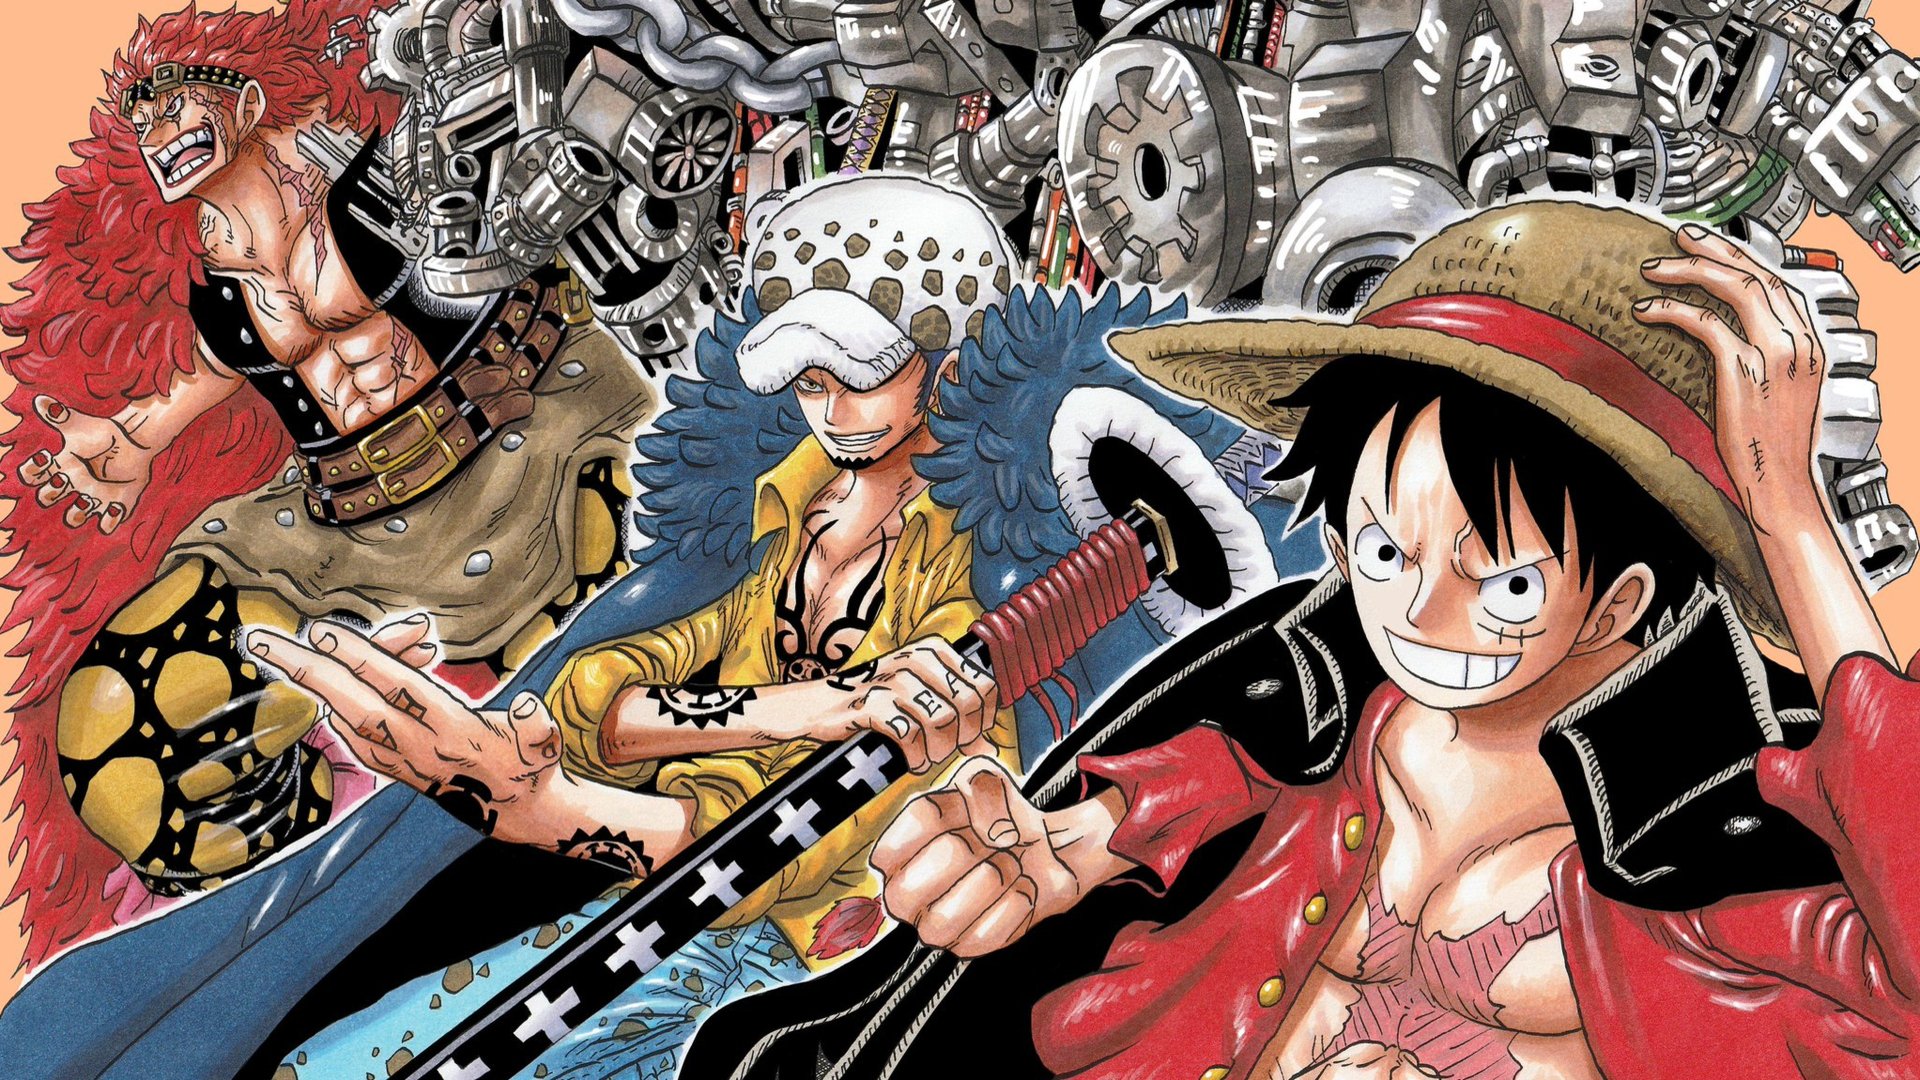 Cặp đôi Luffy và Nami là một trong những cặp đôi đầy nhiệt huyết trong bộ truyện One Piece. Bức ảnh của hai người trông thật đẹp trong trang phục cổ điển và có đầy đủ yếu tố của một câu chuyện tình lãng mạn. Chỉ cần nhìn vào bức ảnh này, bạn sẽ bị cuốn vào thế giới của đôi lứa này và thích thú với họ.